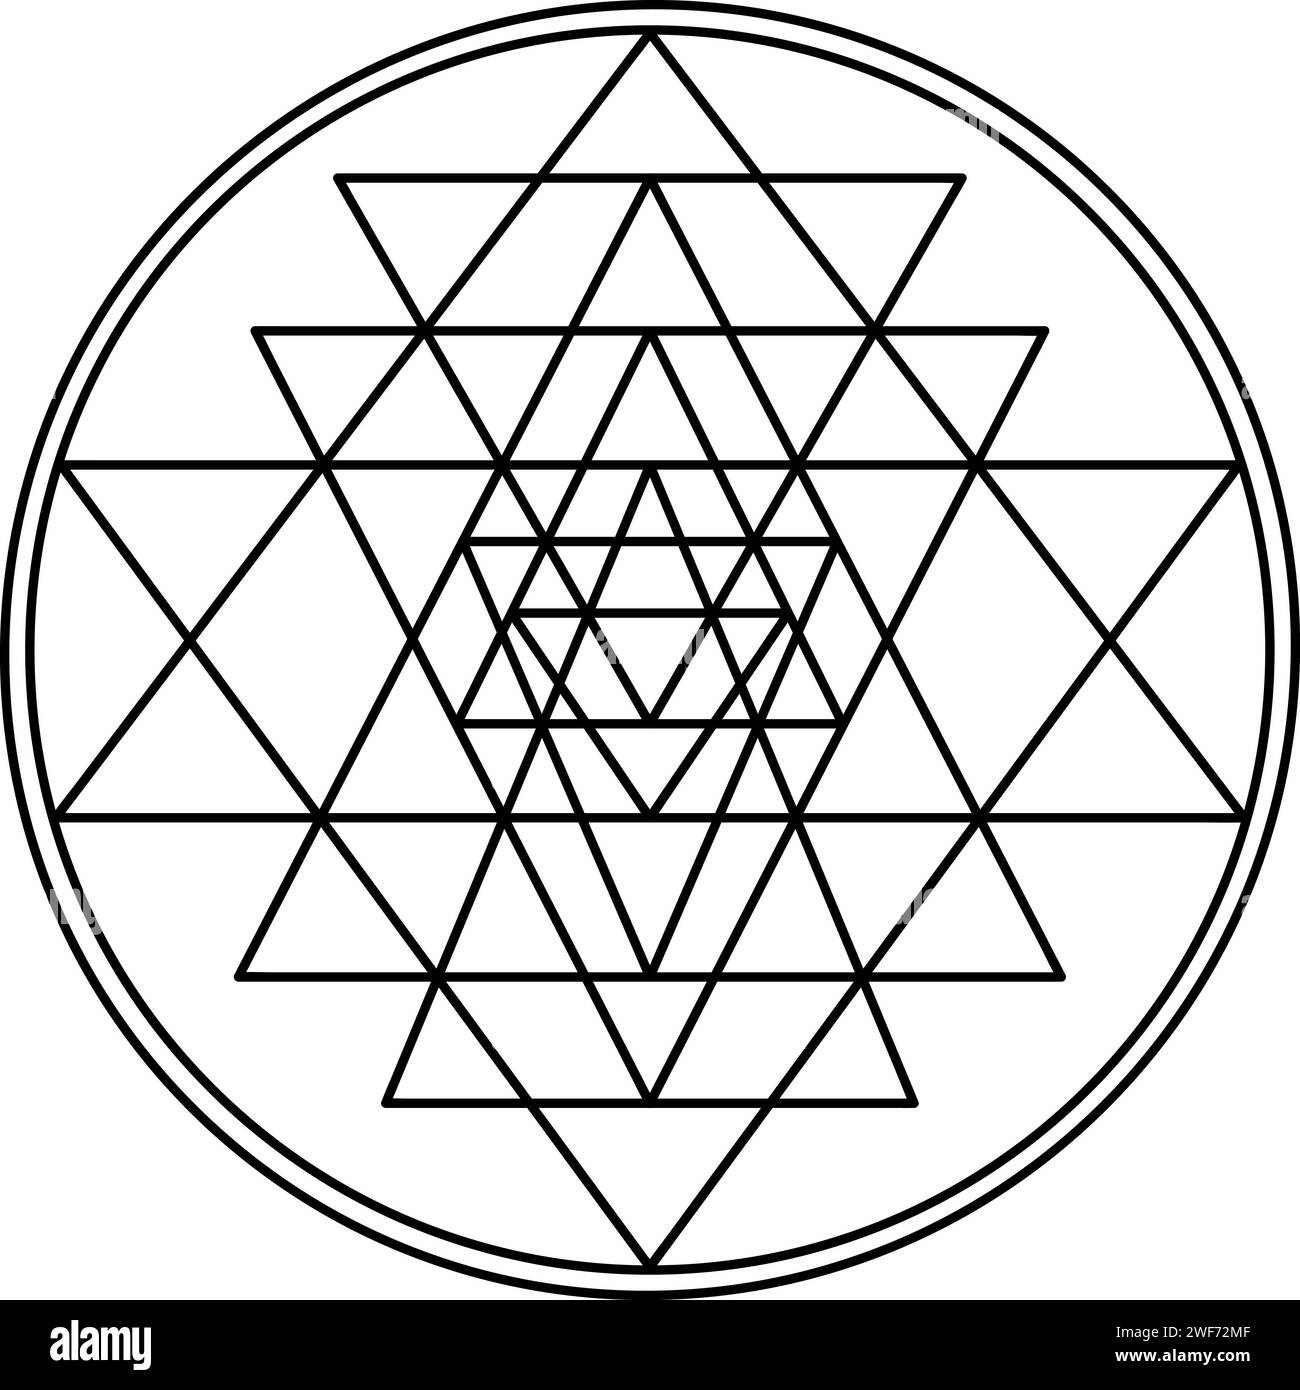 Sri yantra symbol isolated on white background. Sacred geometry symbol concept. Stock Photo